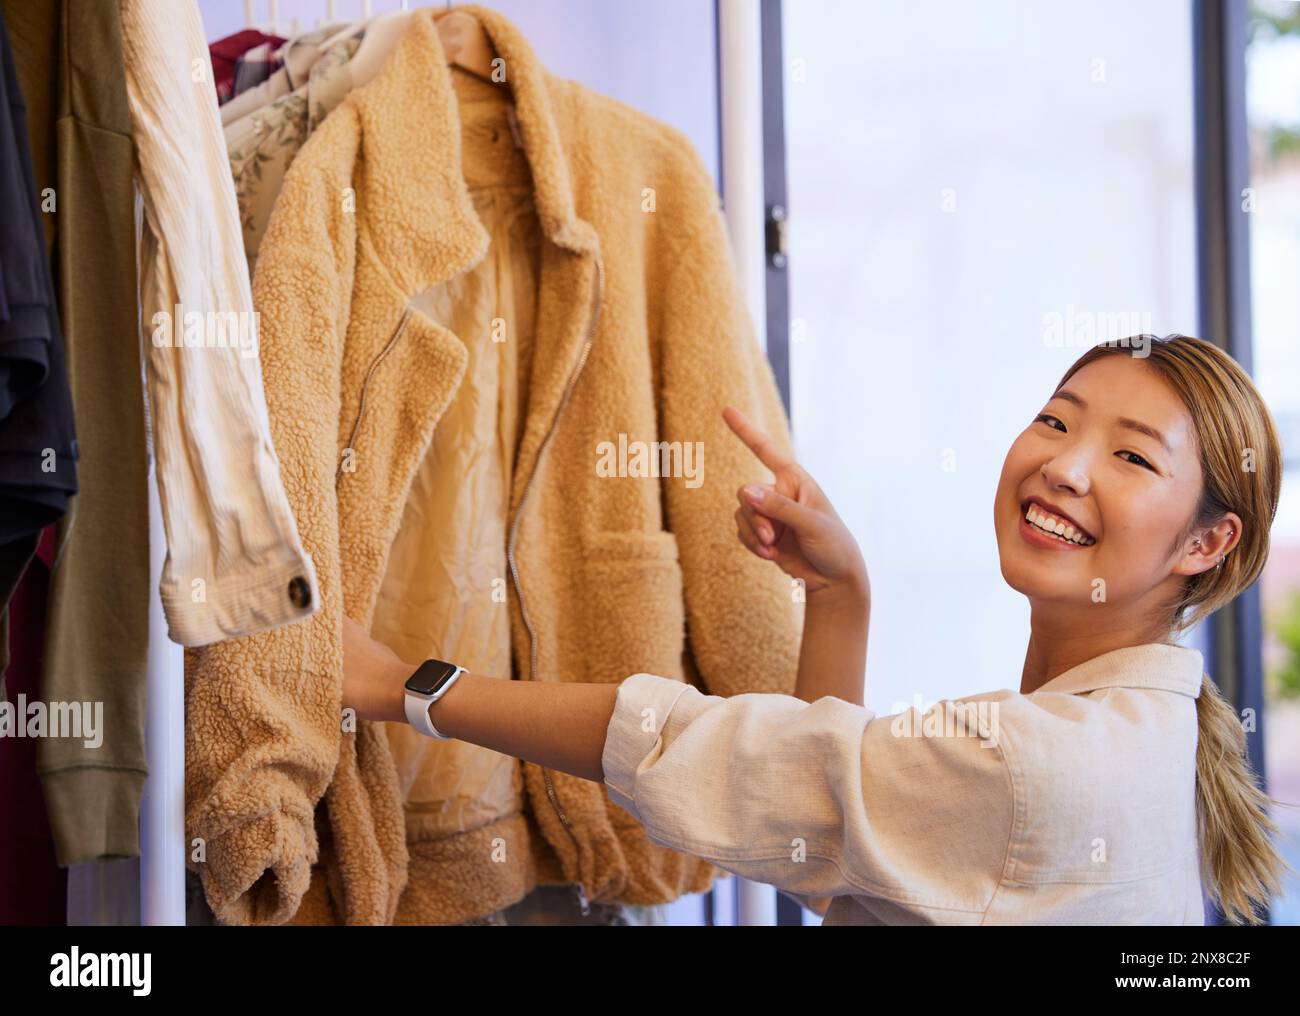 Choix de shopping, portrait et femme asiatique regardant des affaires de vente et des vêtements de réduction dans un magasin. Mode, sourire et client japonais féminin avec un Banque D'Images